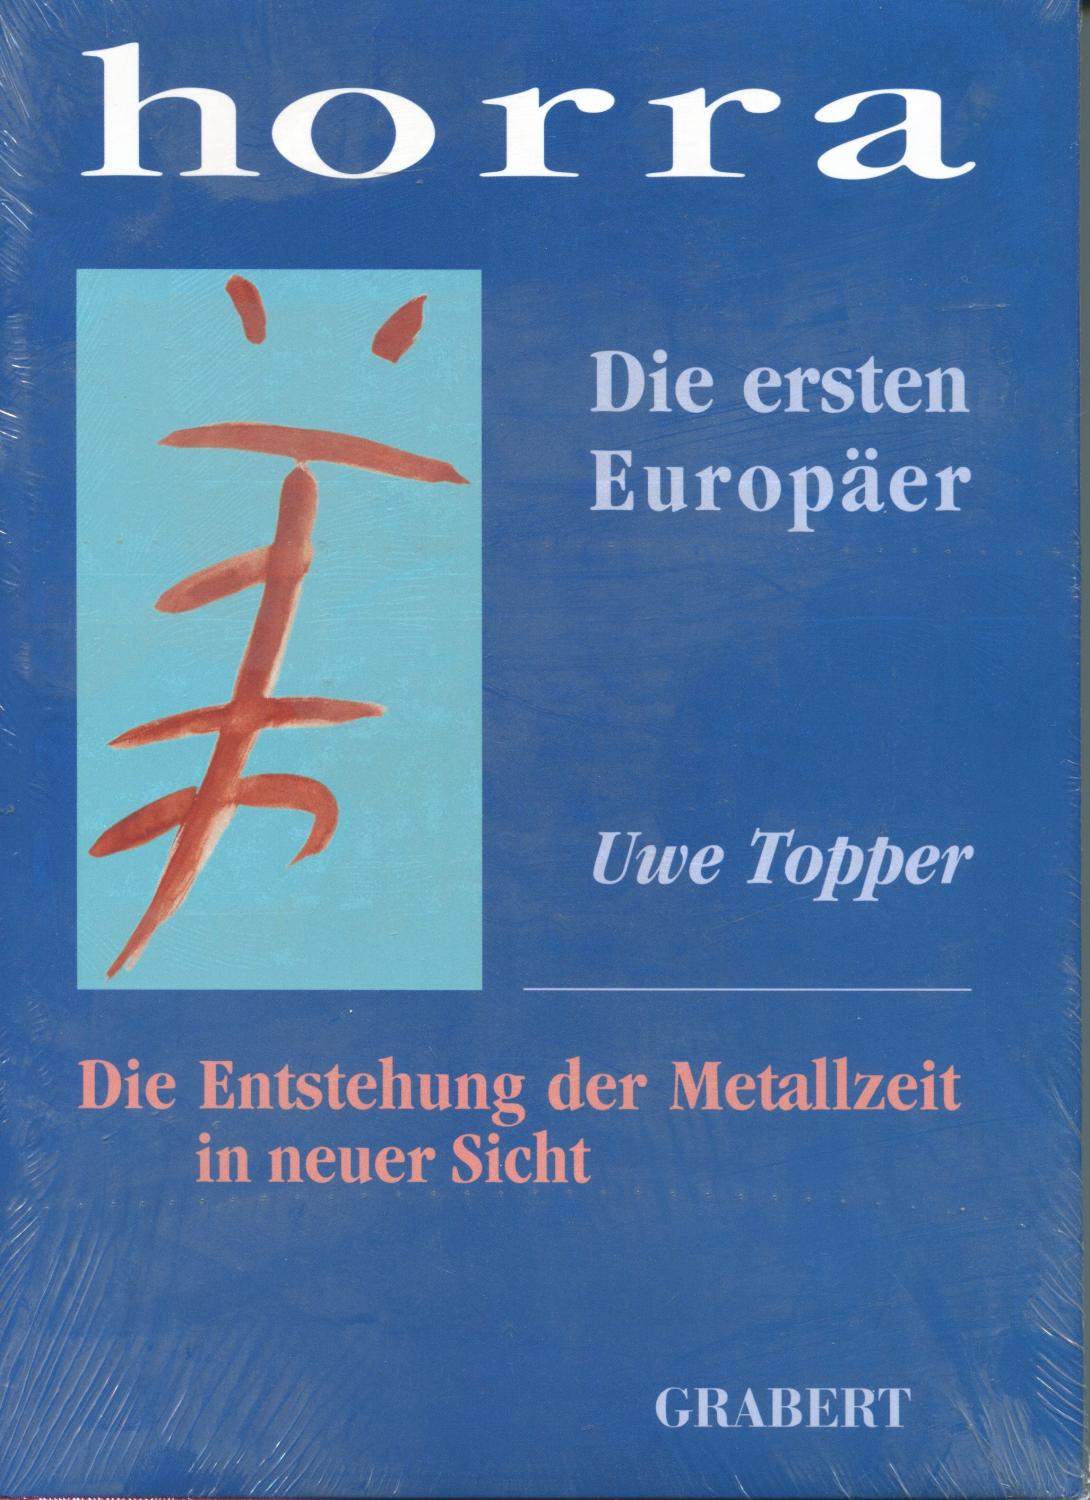 Horra: Die ersten Europäer. Die Entstehung der Metallzeit in neuer Sicht (Veröffentlichungen aus Hochschule, Wissenschaft und Forschung)